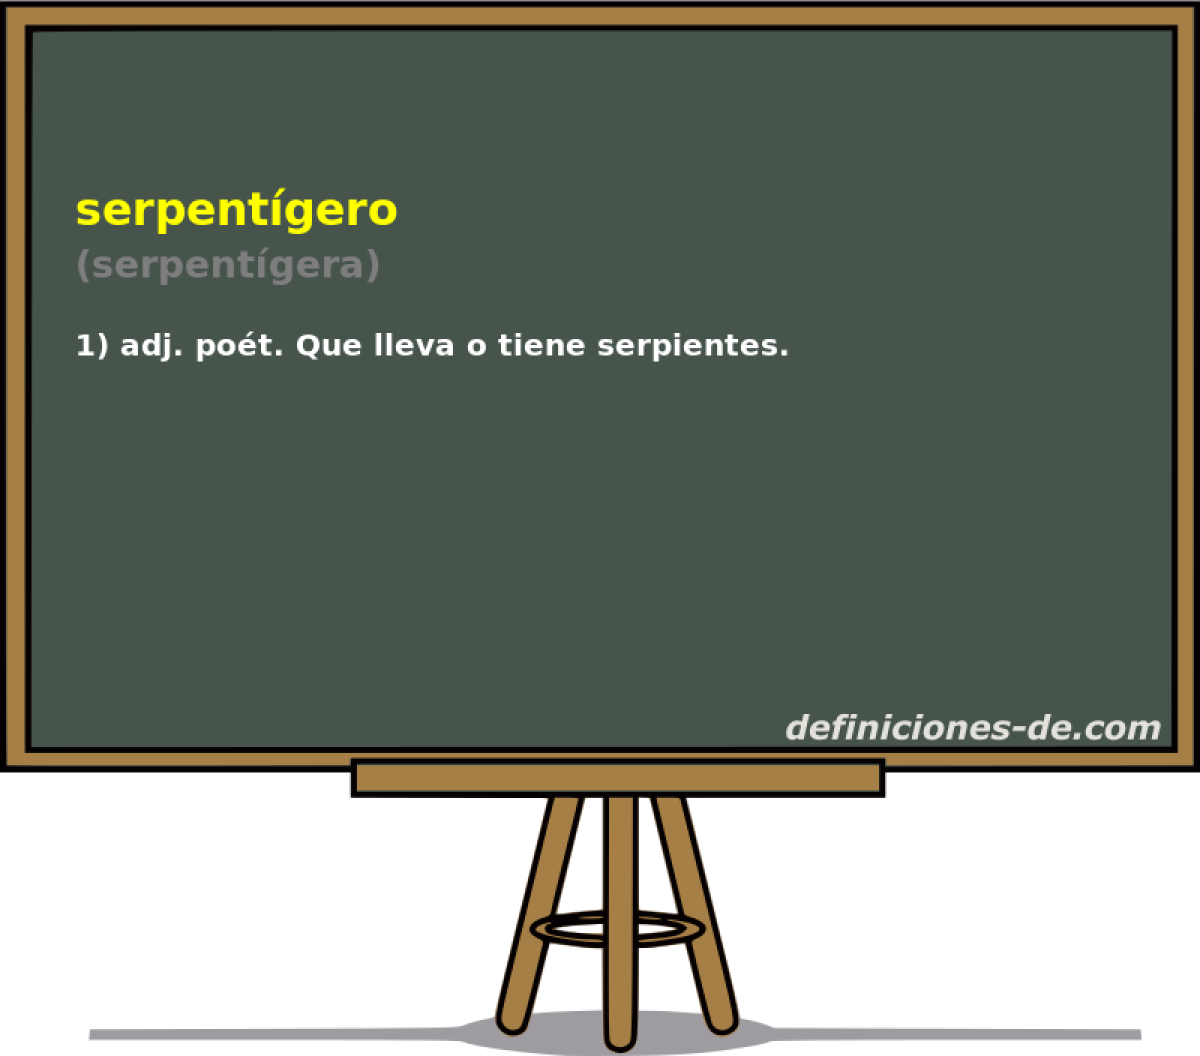 serpentgero (serpentgera)